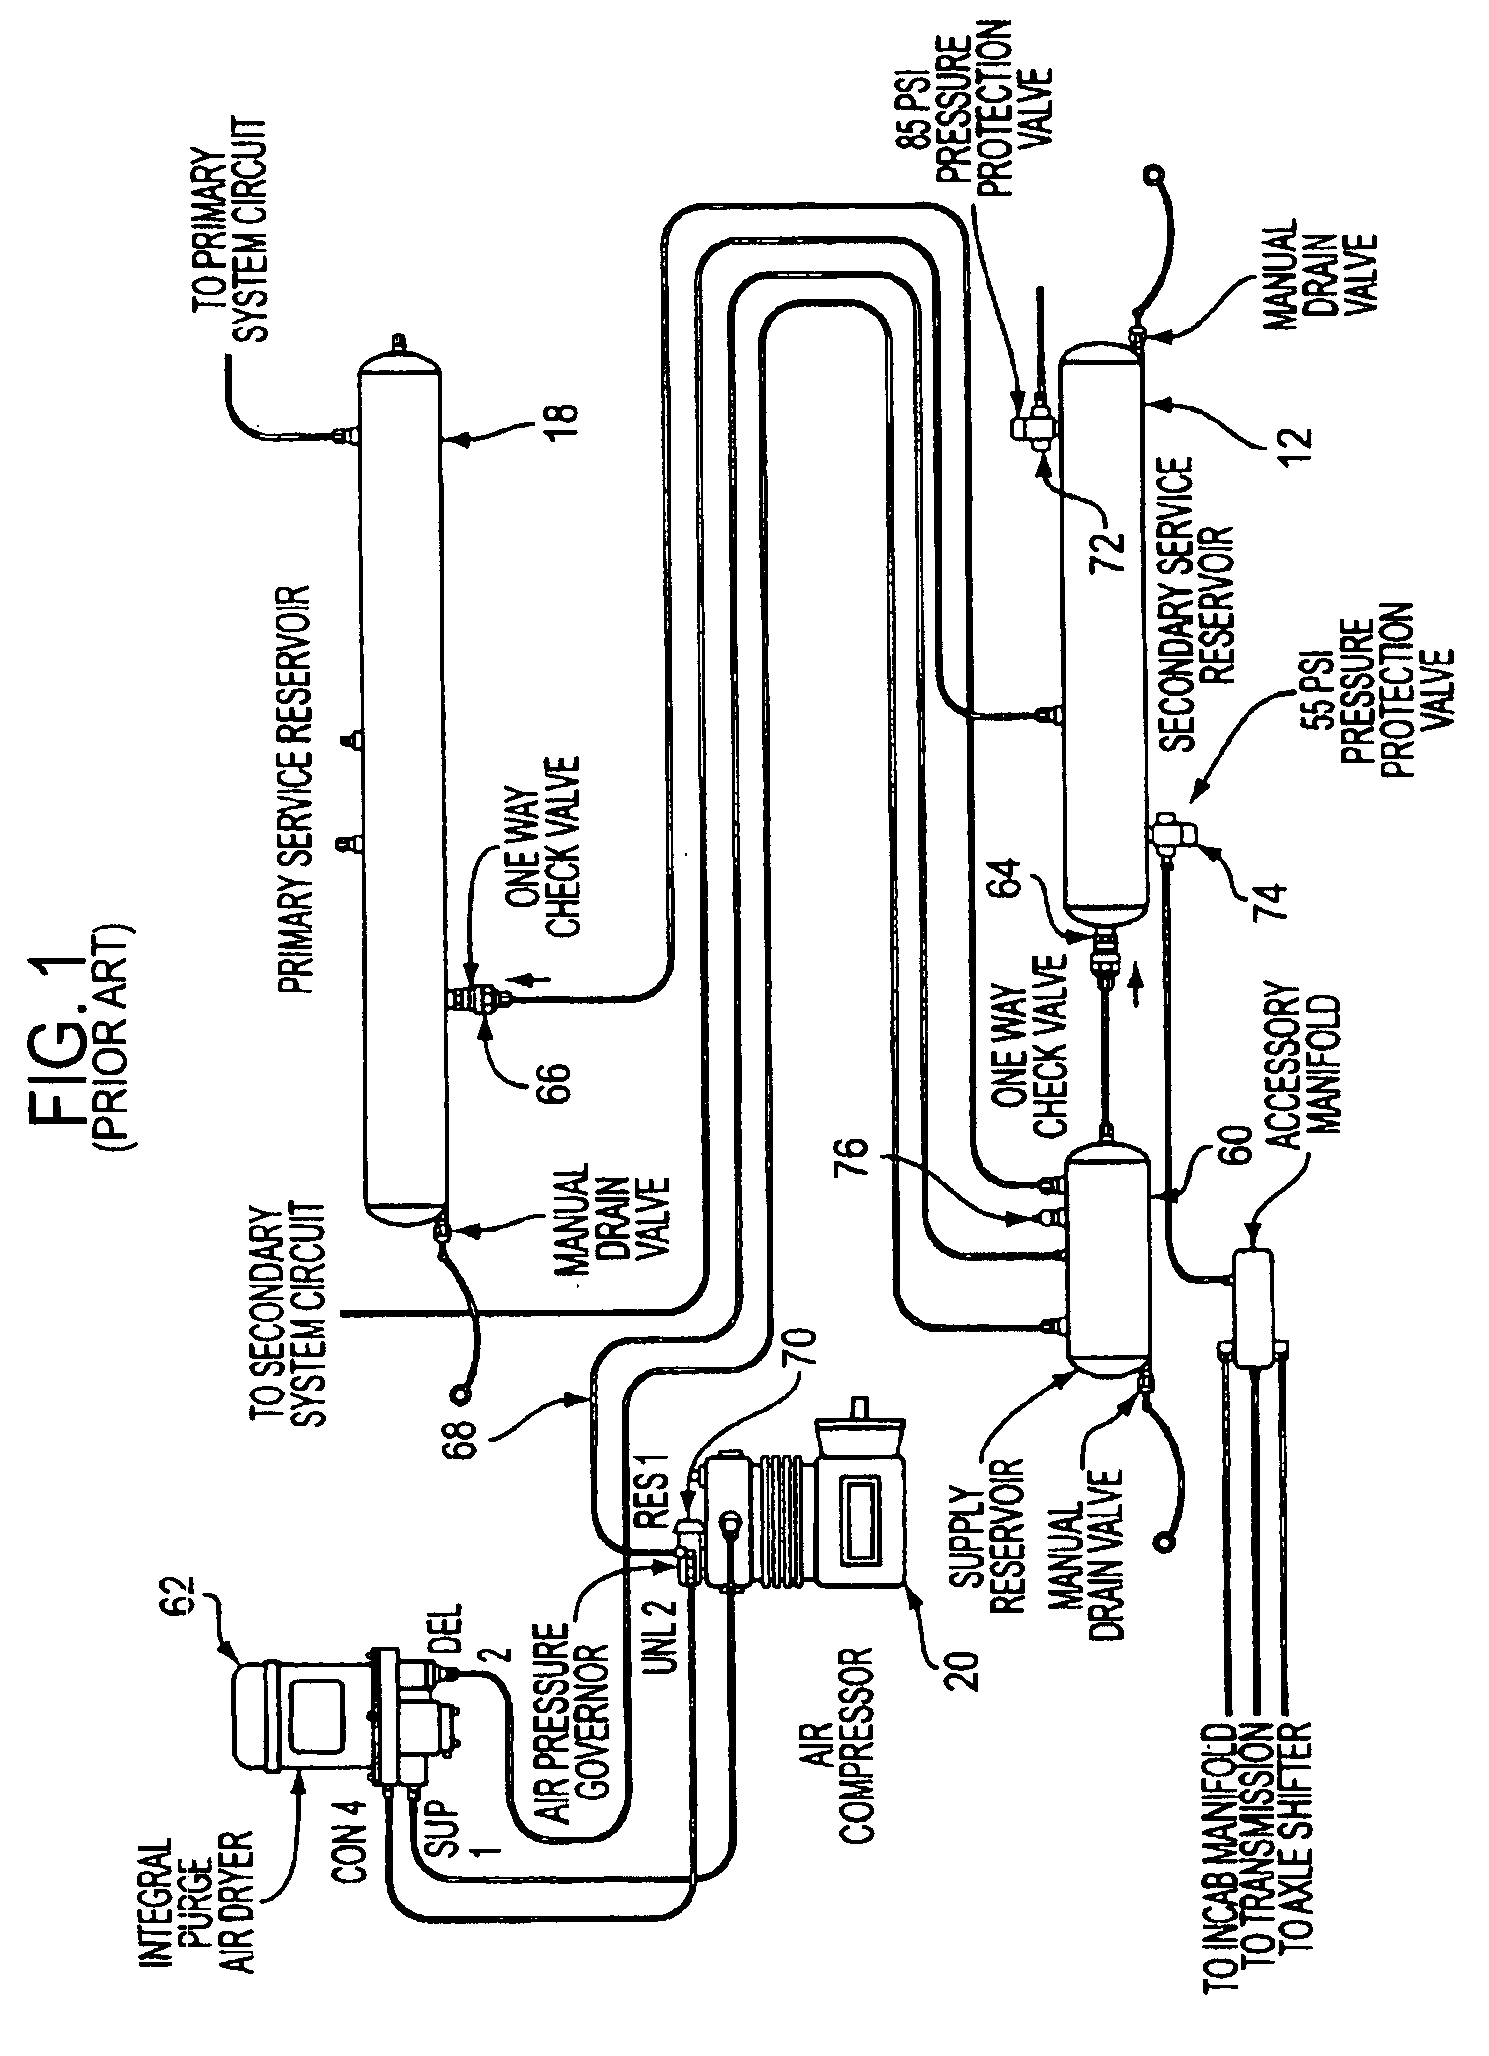 Air dryer reservoir module components